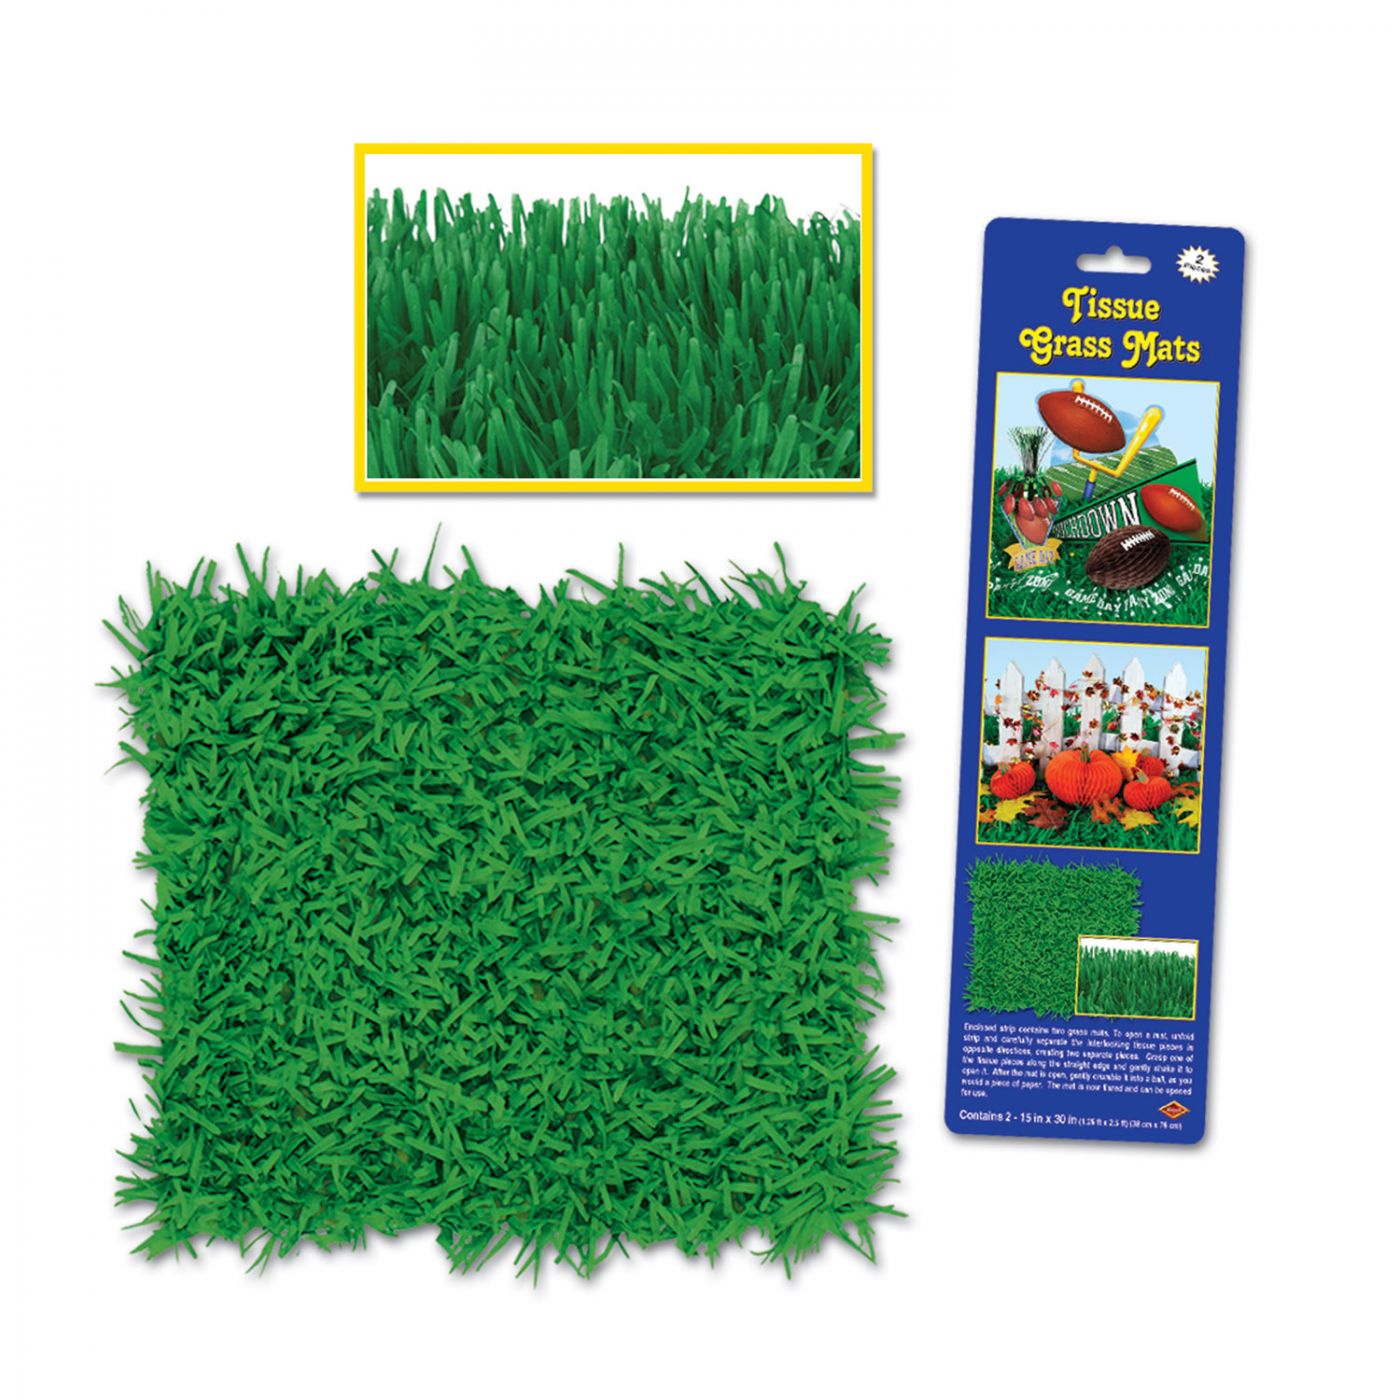 Pkgd Tissue Grass Mats (12) image